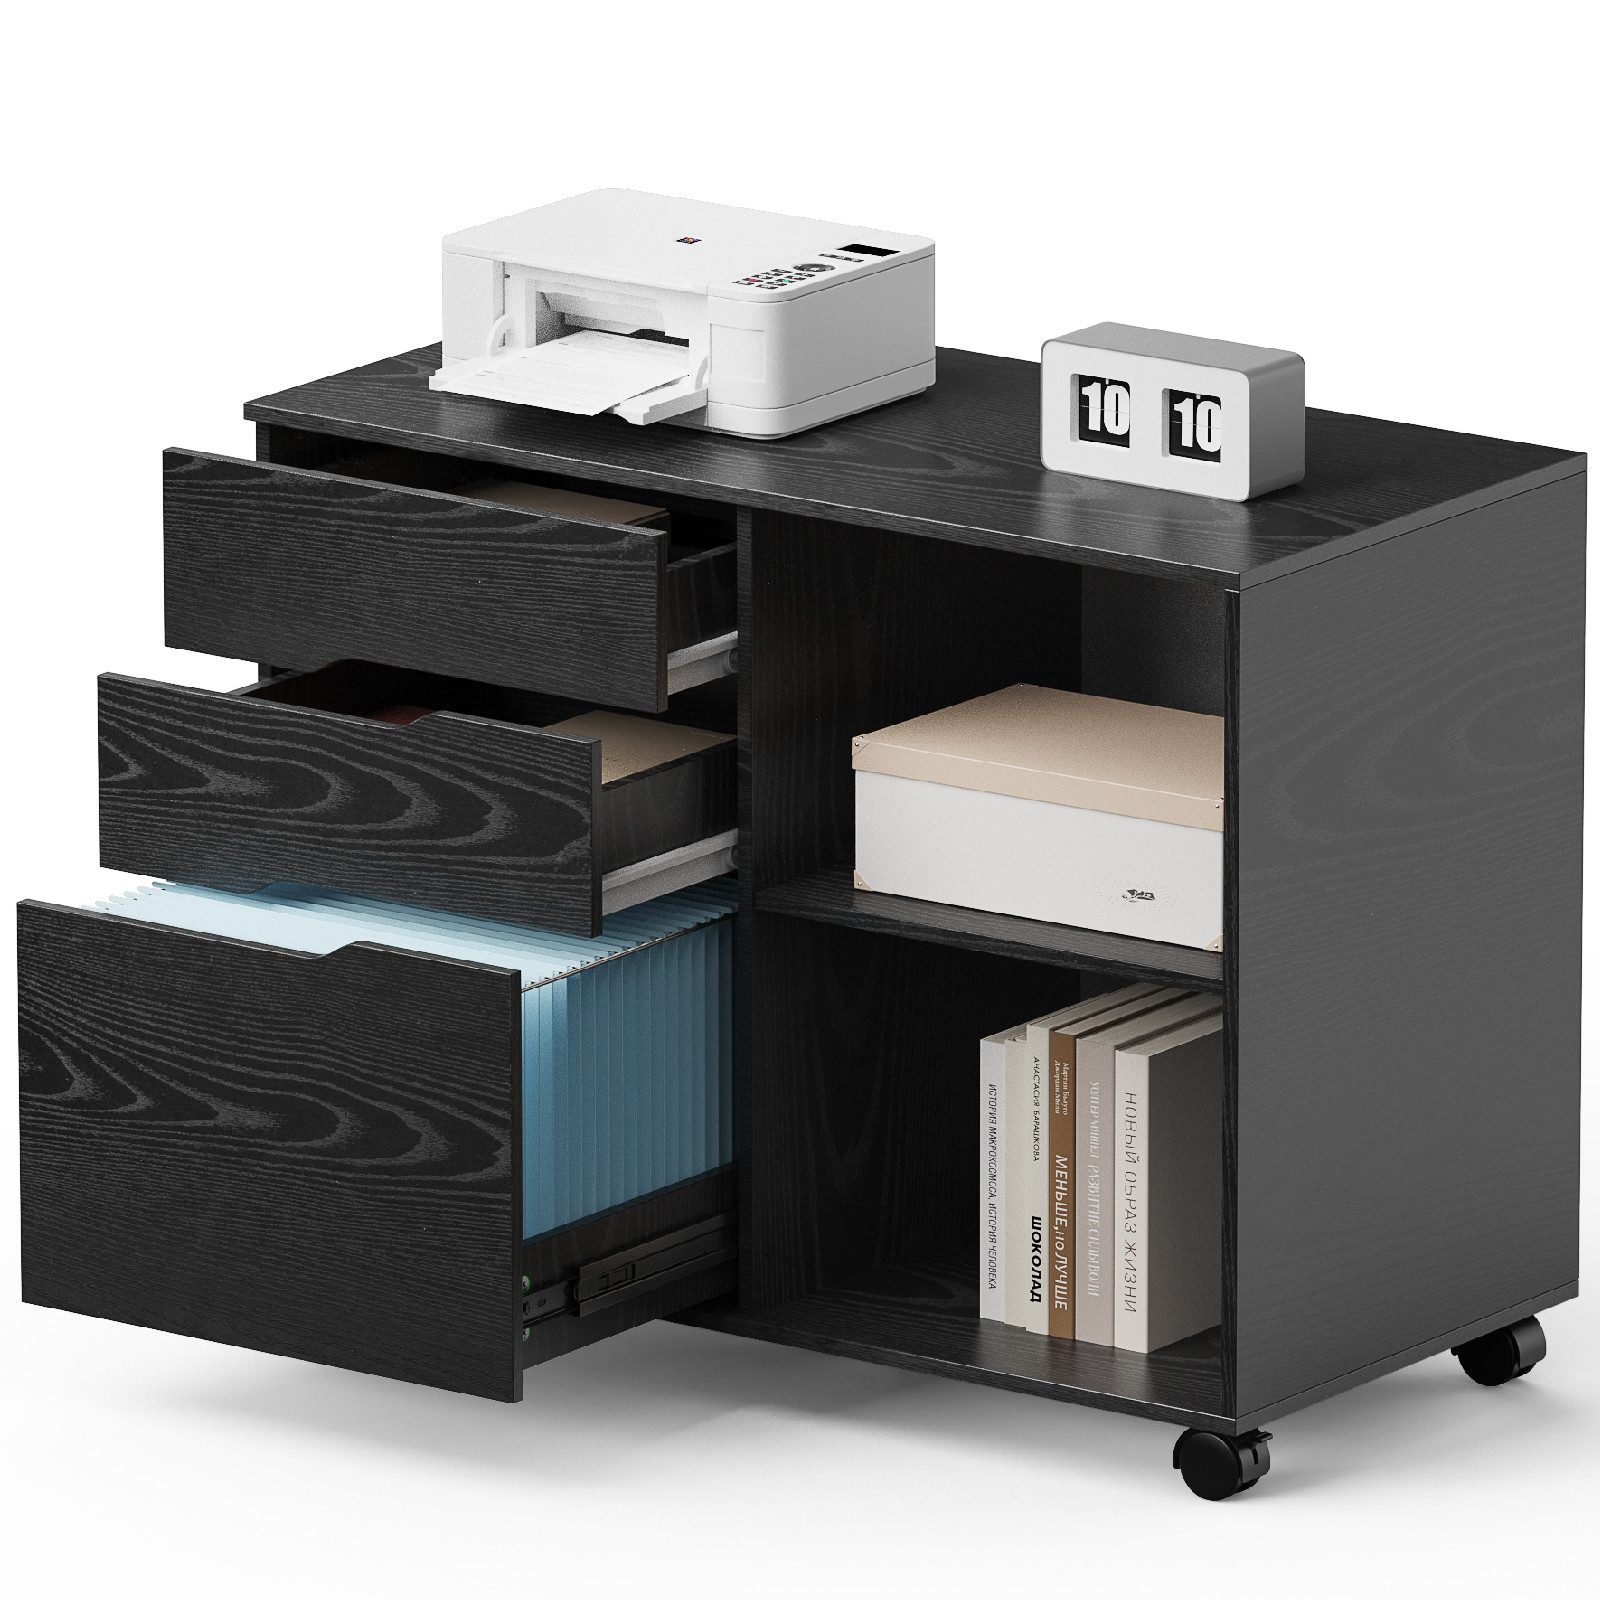 JOEAIS Rollcontainer Schreibtisch Büromöbel Druckerschrank Büro Schrank, Schreibtisch Schrank auf Rollen Rollschrank Kommode mit Rollen